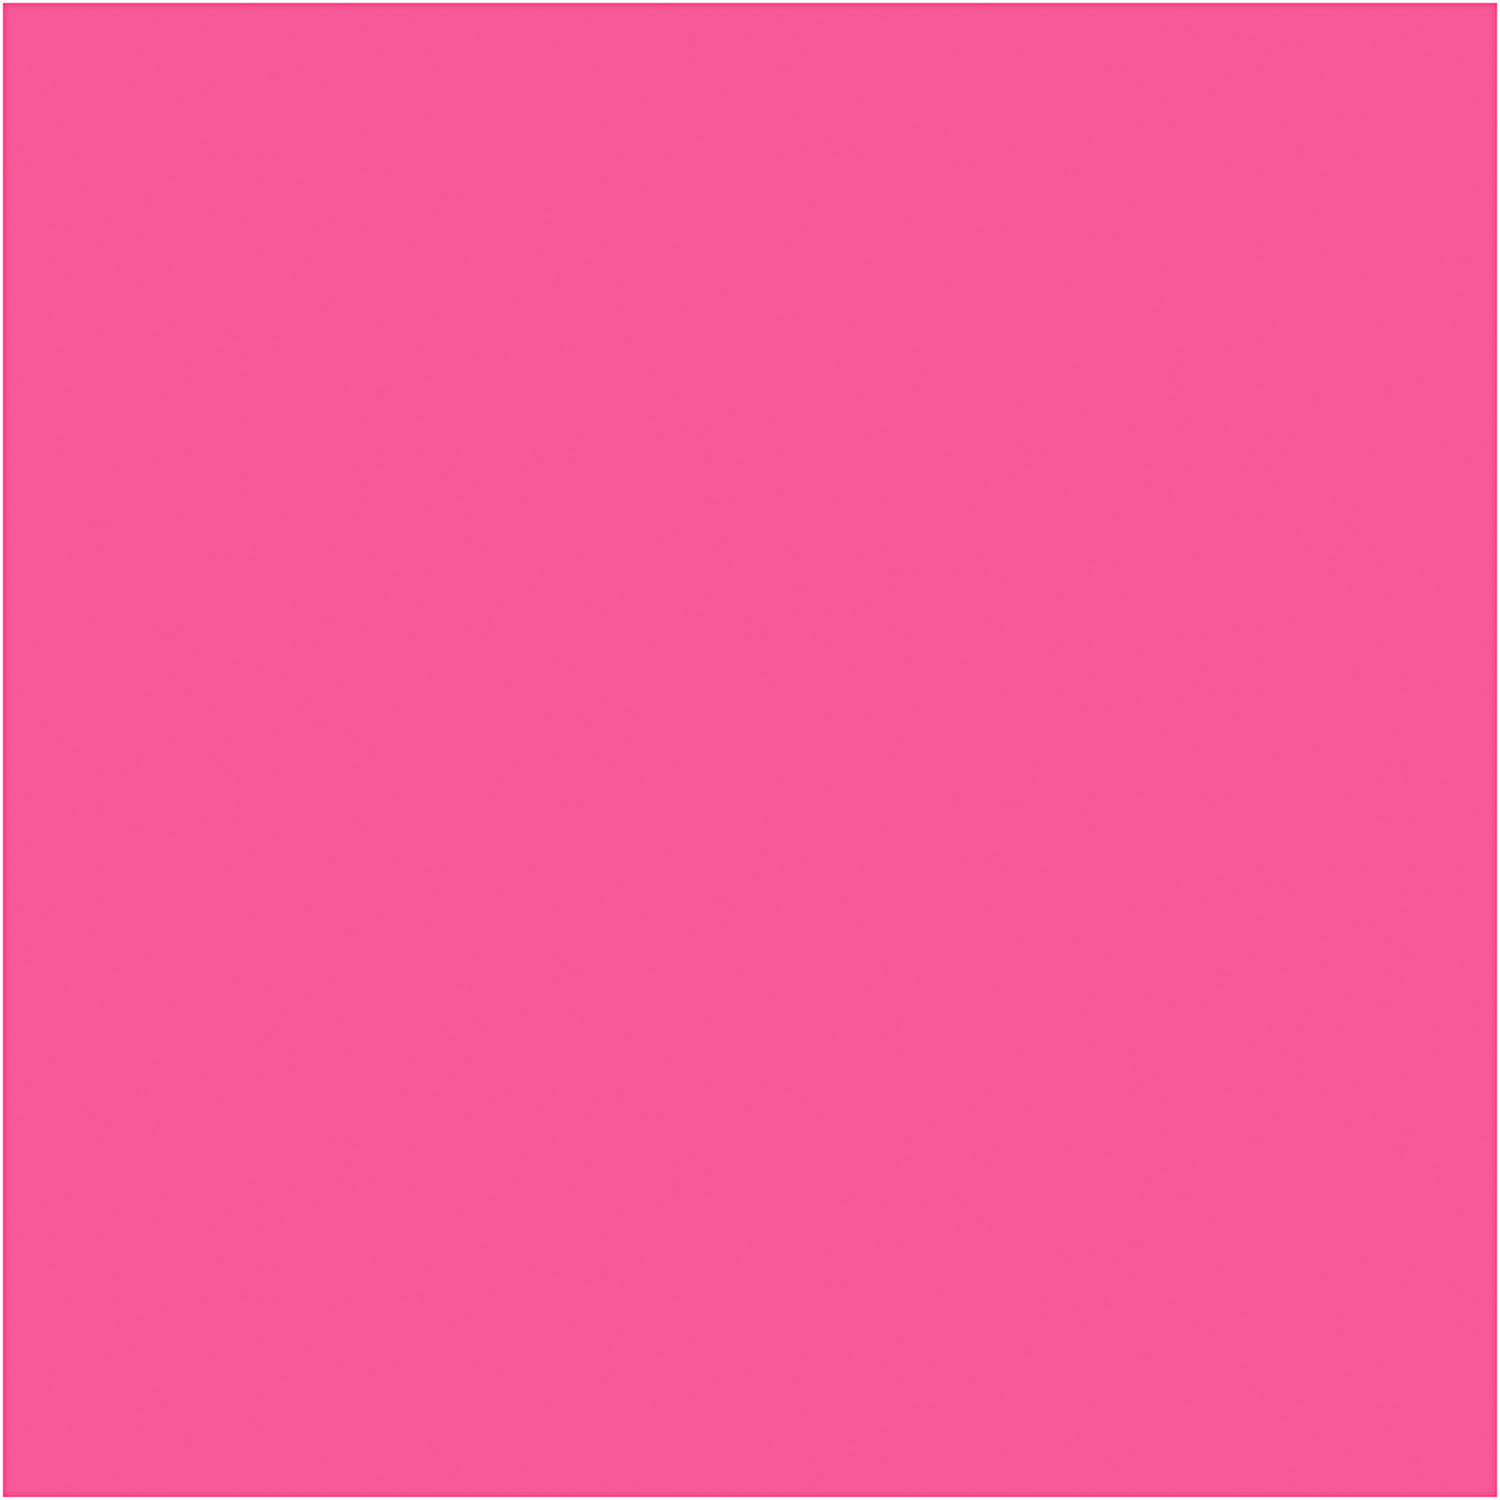 Farbiger Karton Pink A4, 20 Blatt